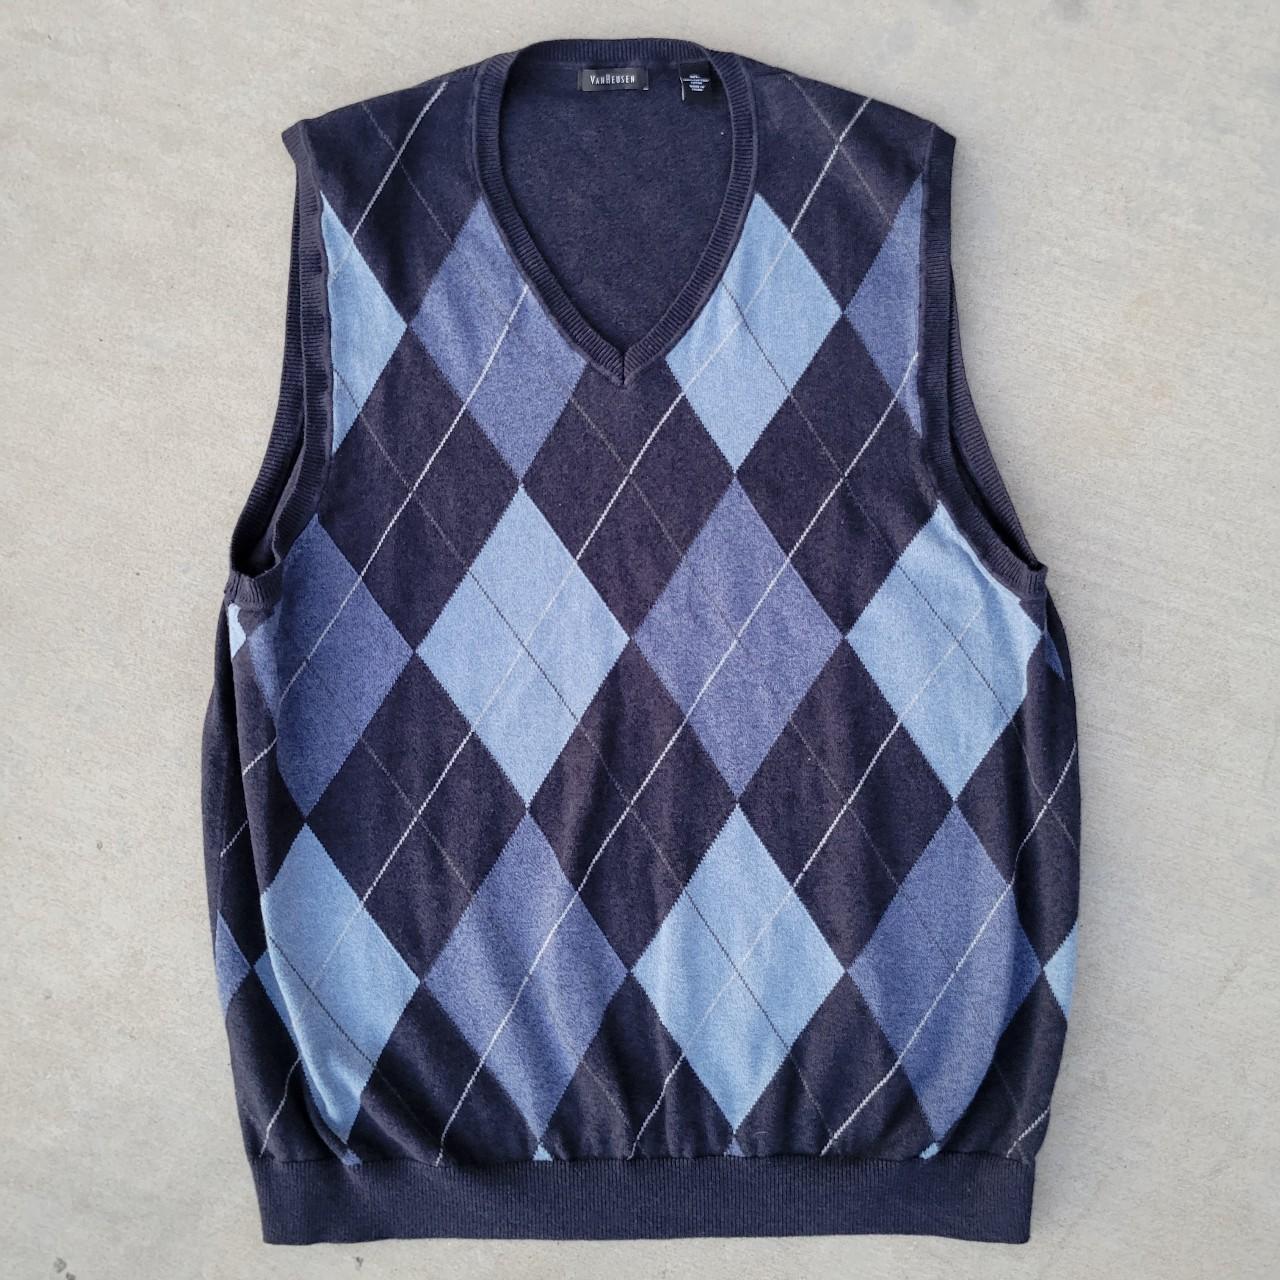 Van Heusen Sweater Vest Size XL #sweatervest #vest... - Depop